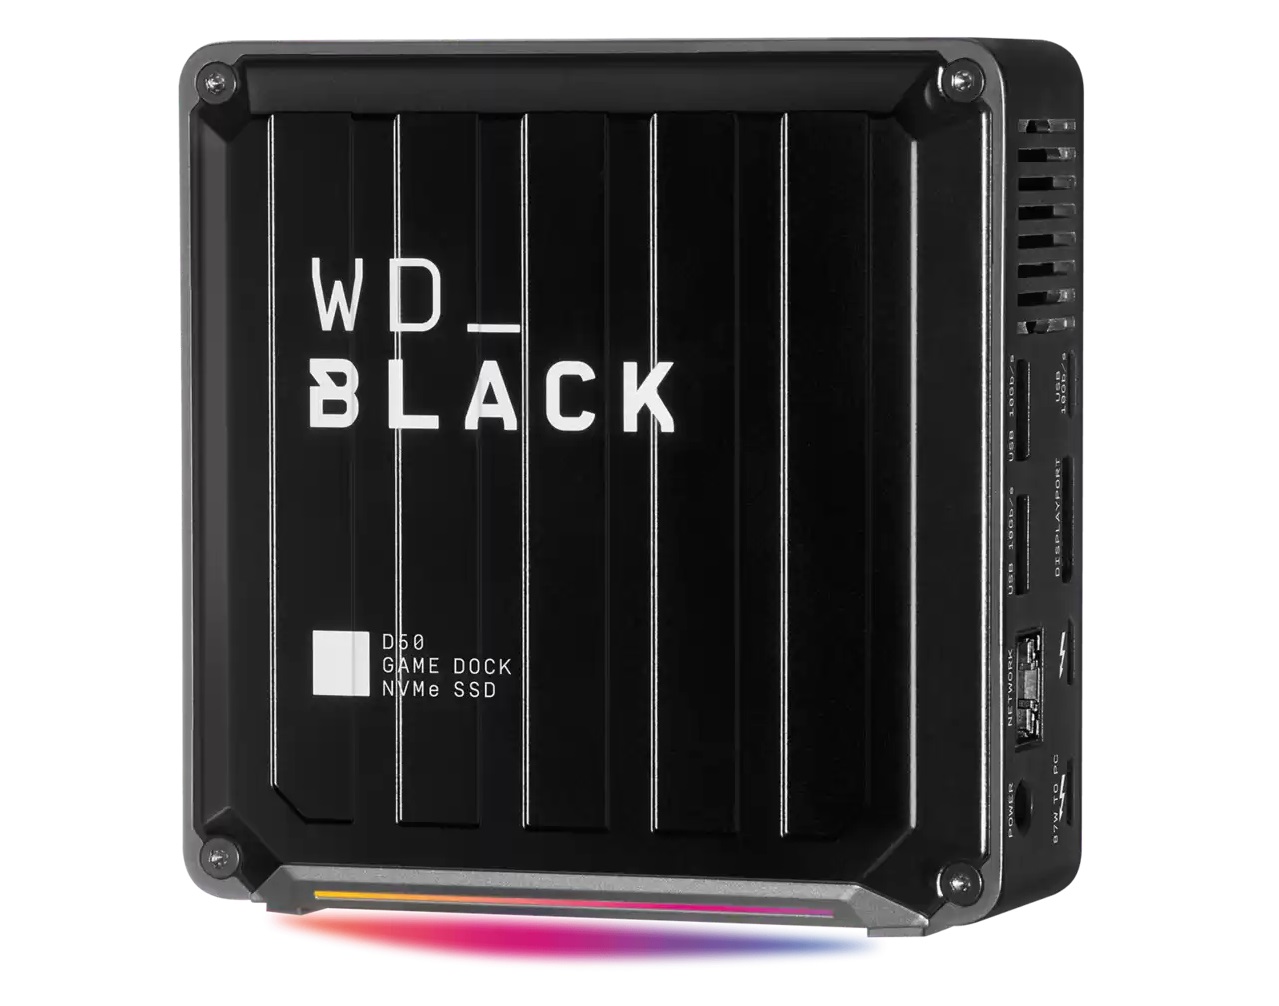 WD BLACK D50 Game Dock – Die bessere Dockingstation